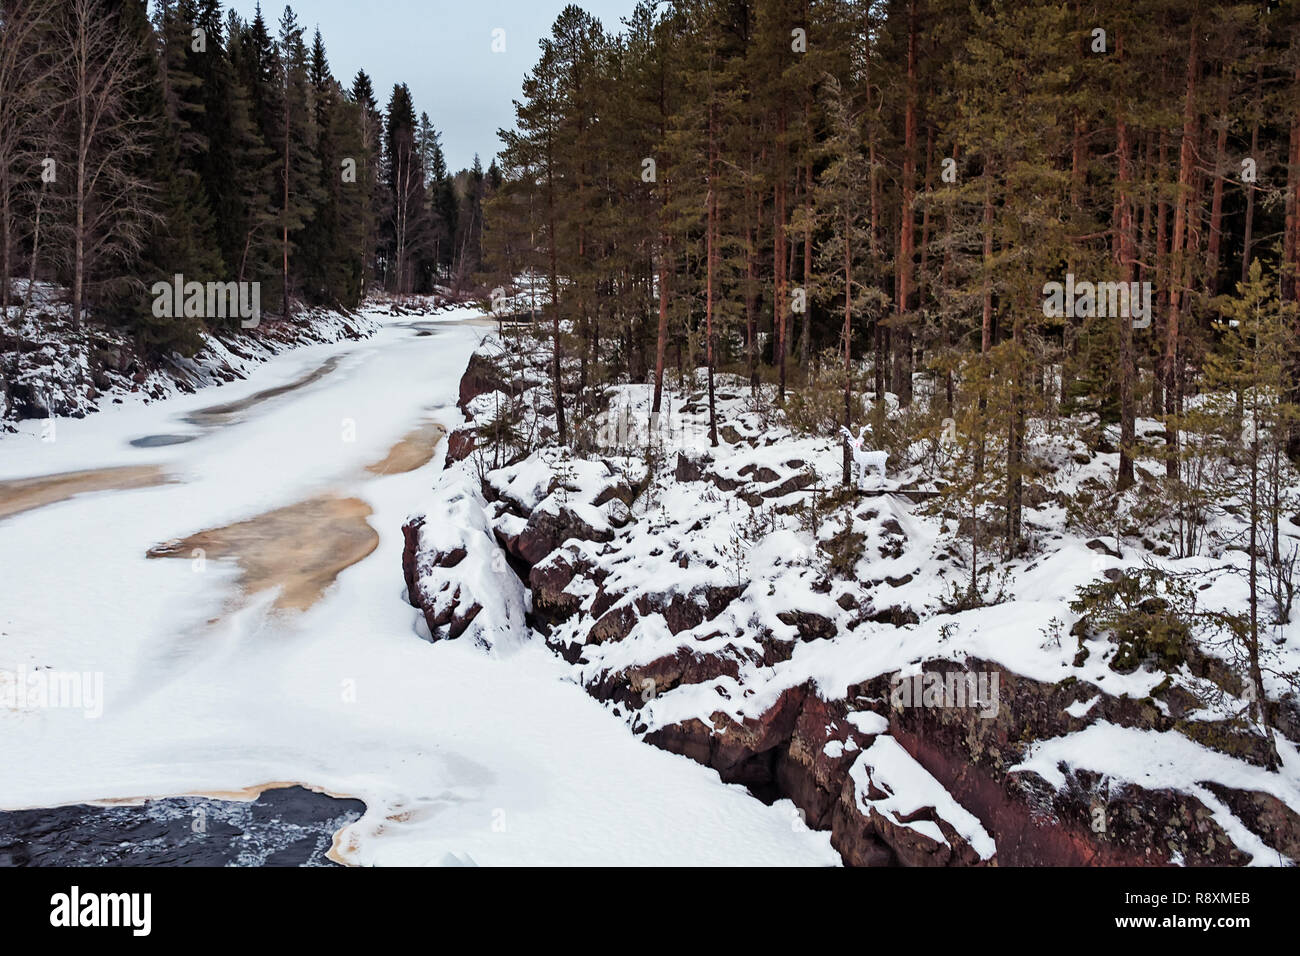 Une glaciale rivière traverse la forêt au nord de la Finlande. Quelqu'un a mis en place un renne en plastique avec un nez rouge par la rivière. Banque D'Images